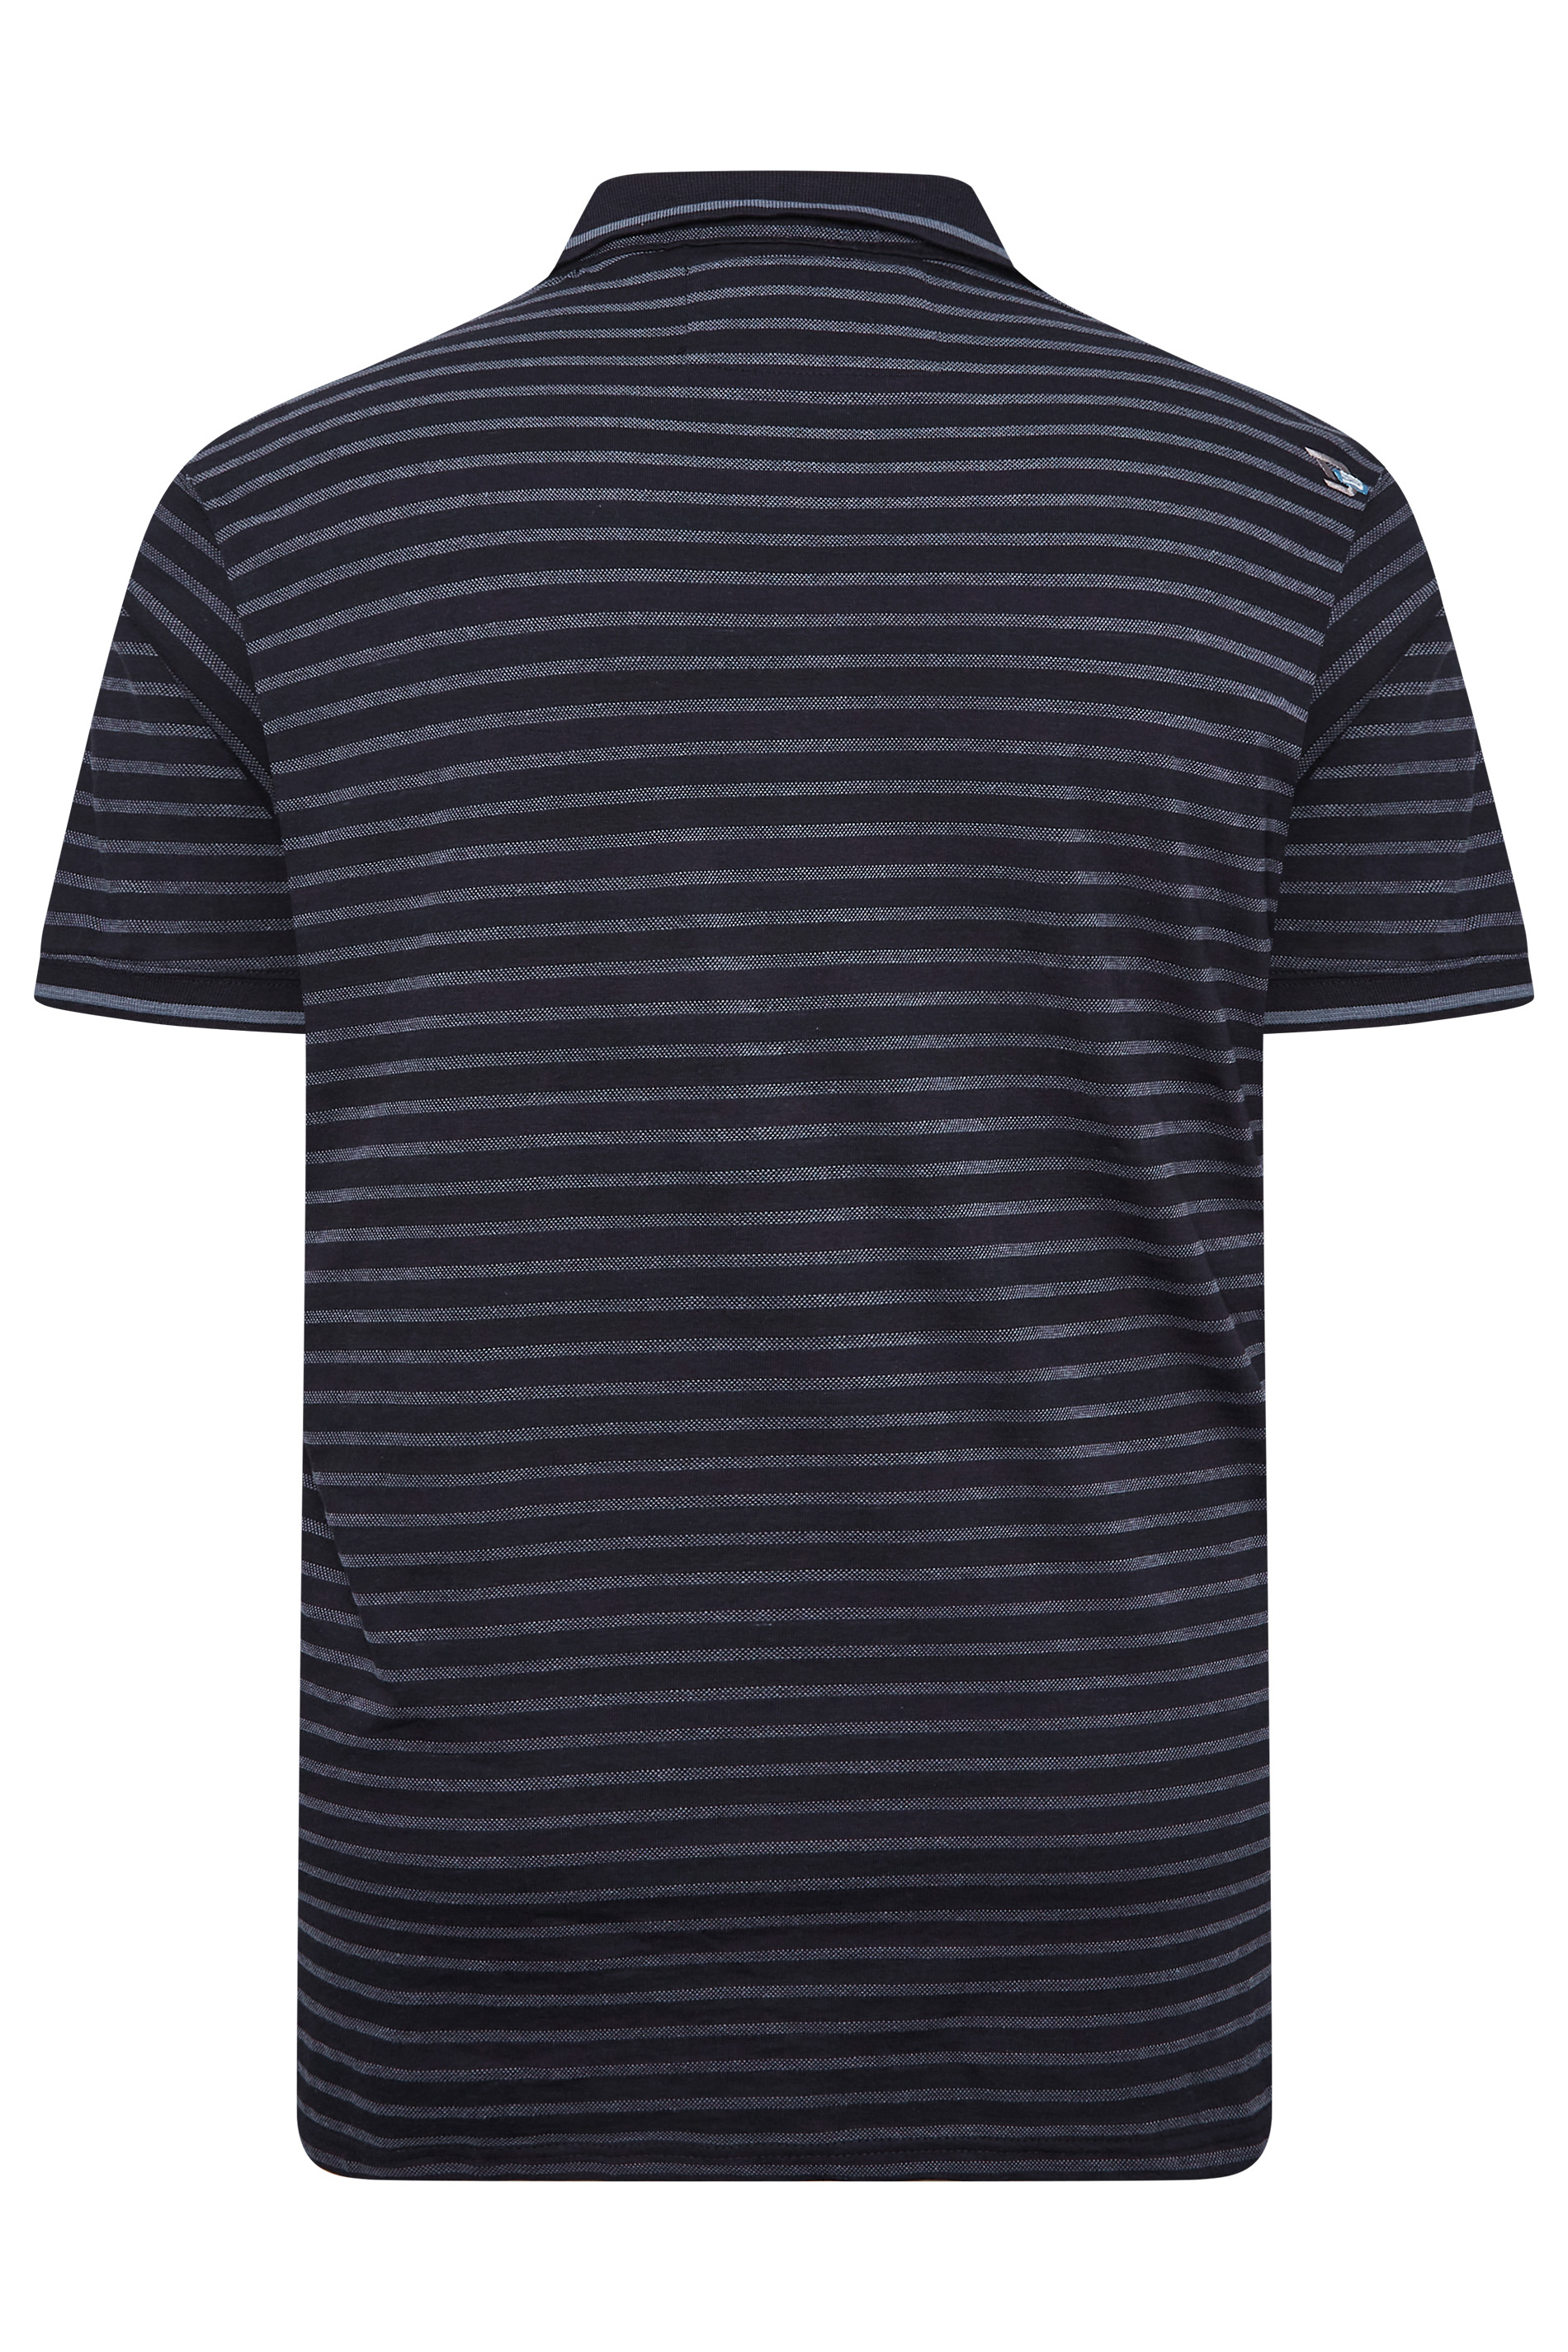 D555 Big & Tall Black Stripe Polo Shirt | BadRhino 3